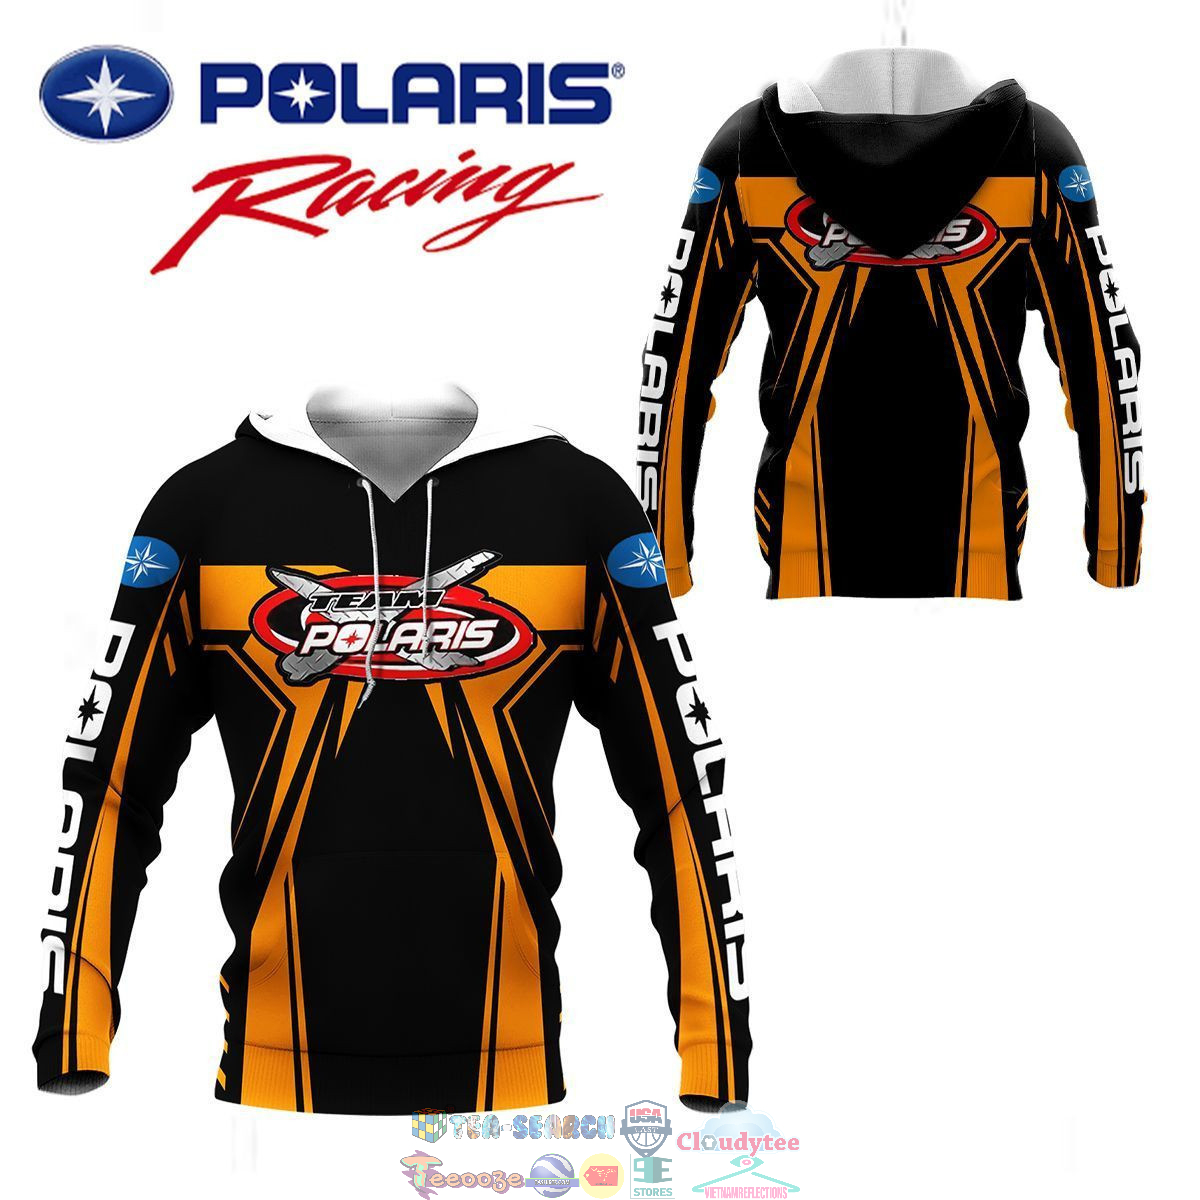 Polaris Racing Team ver 1 3D hoodie and t-shirt